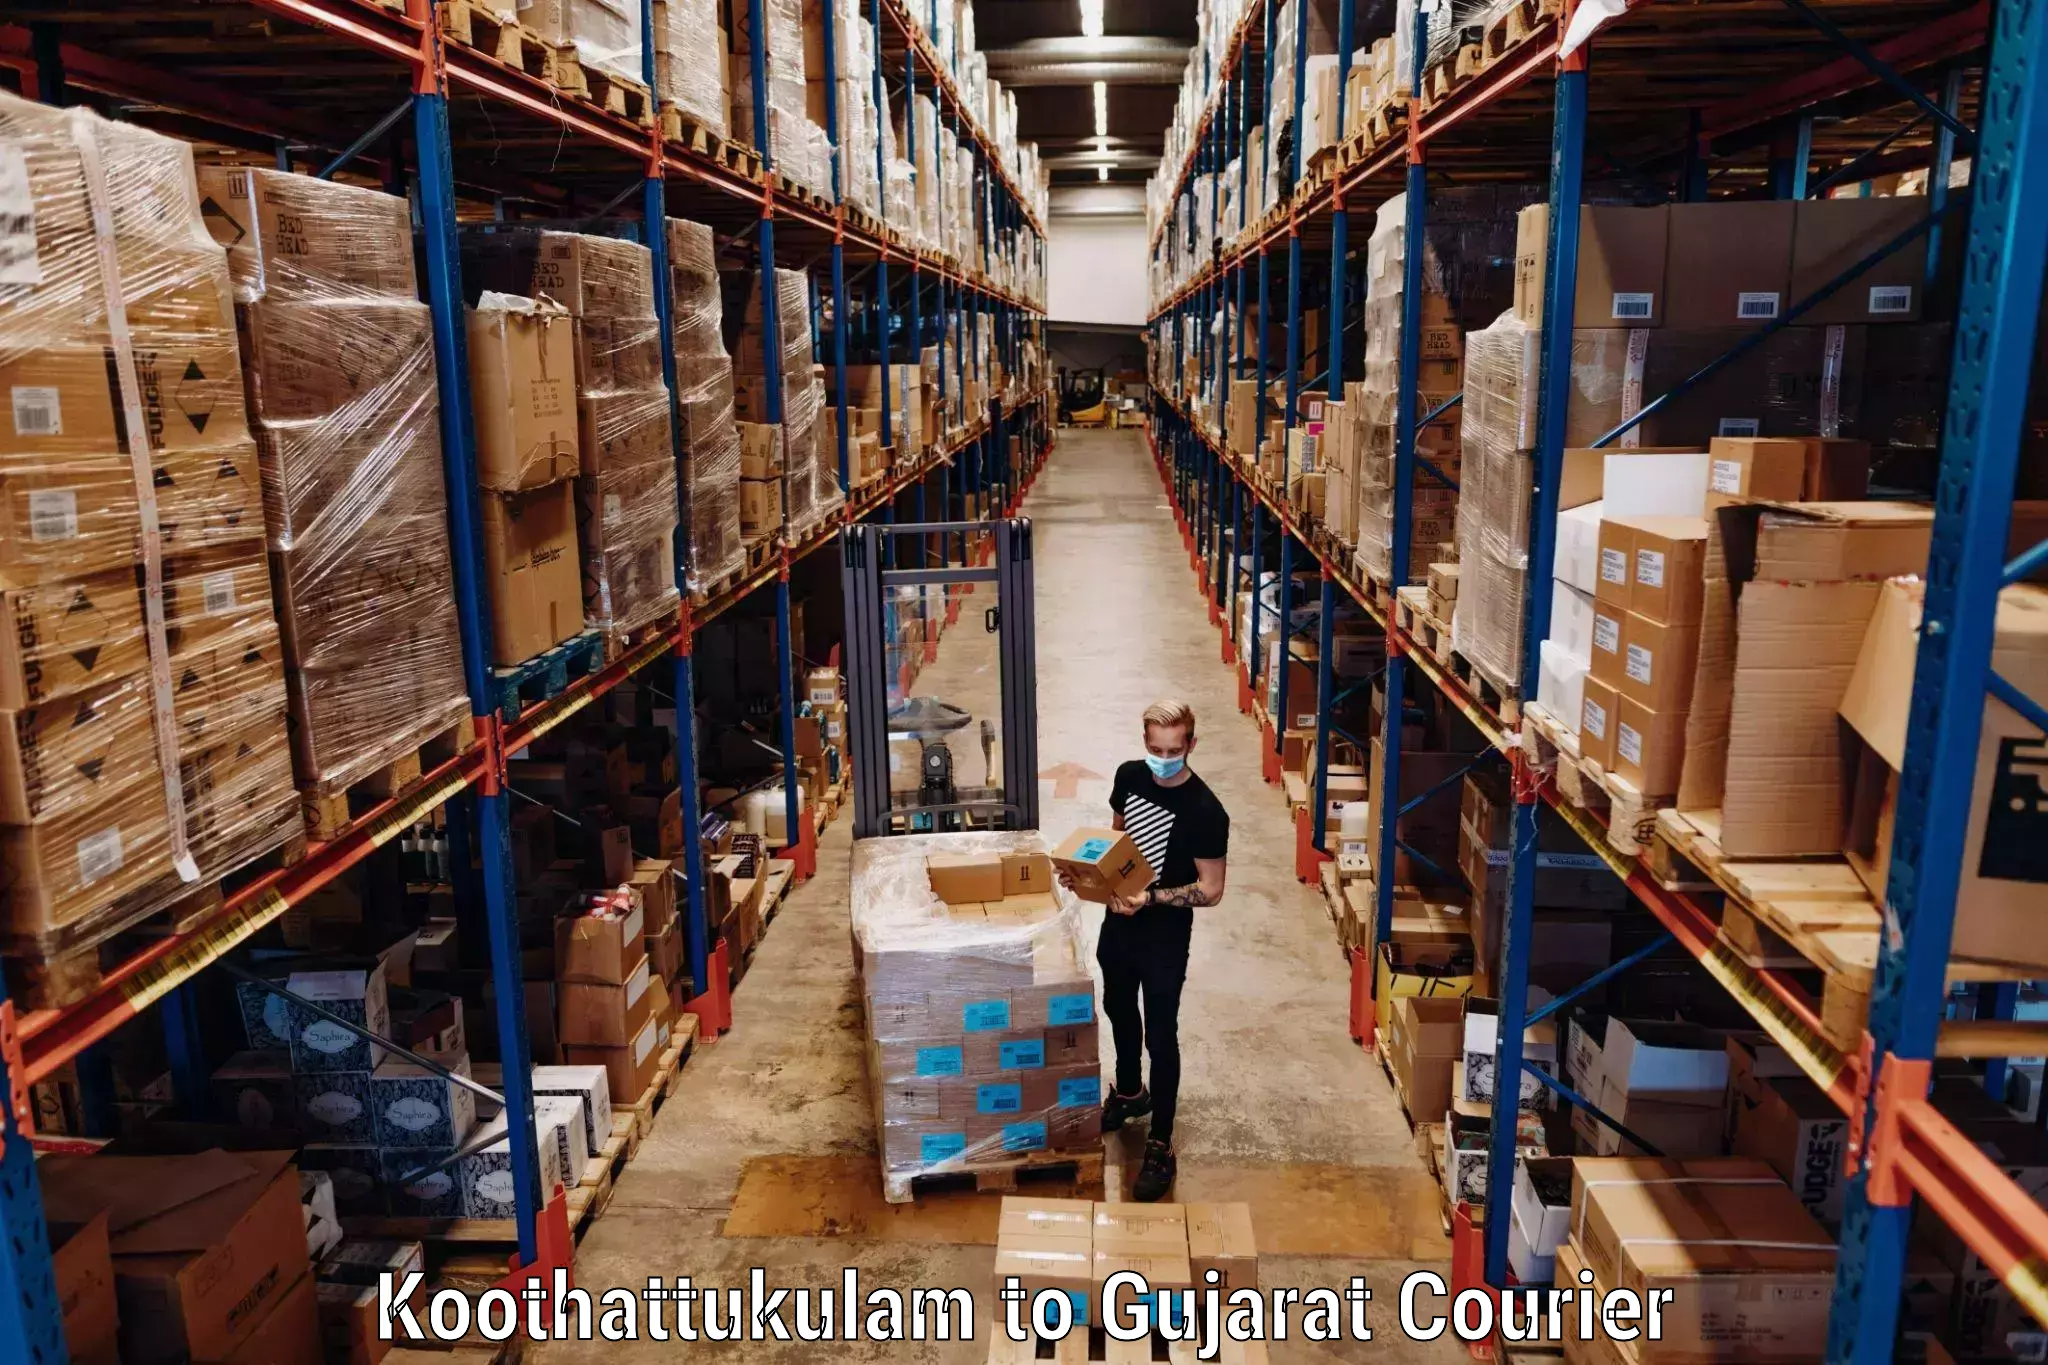 Luggage transport service Koothattukulam to IIIT Vadodara